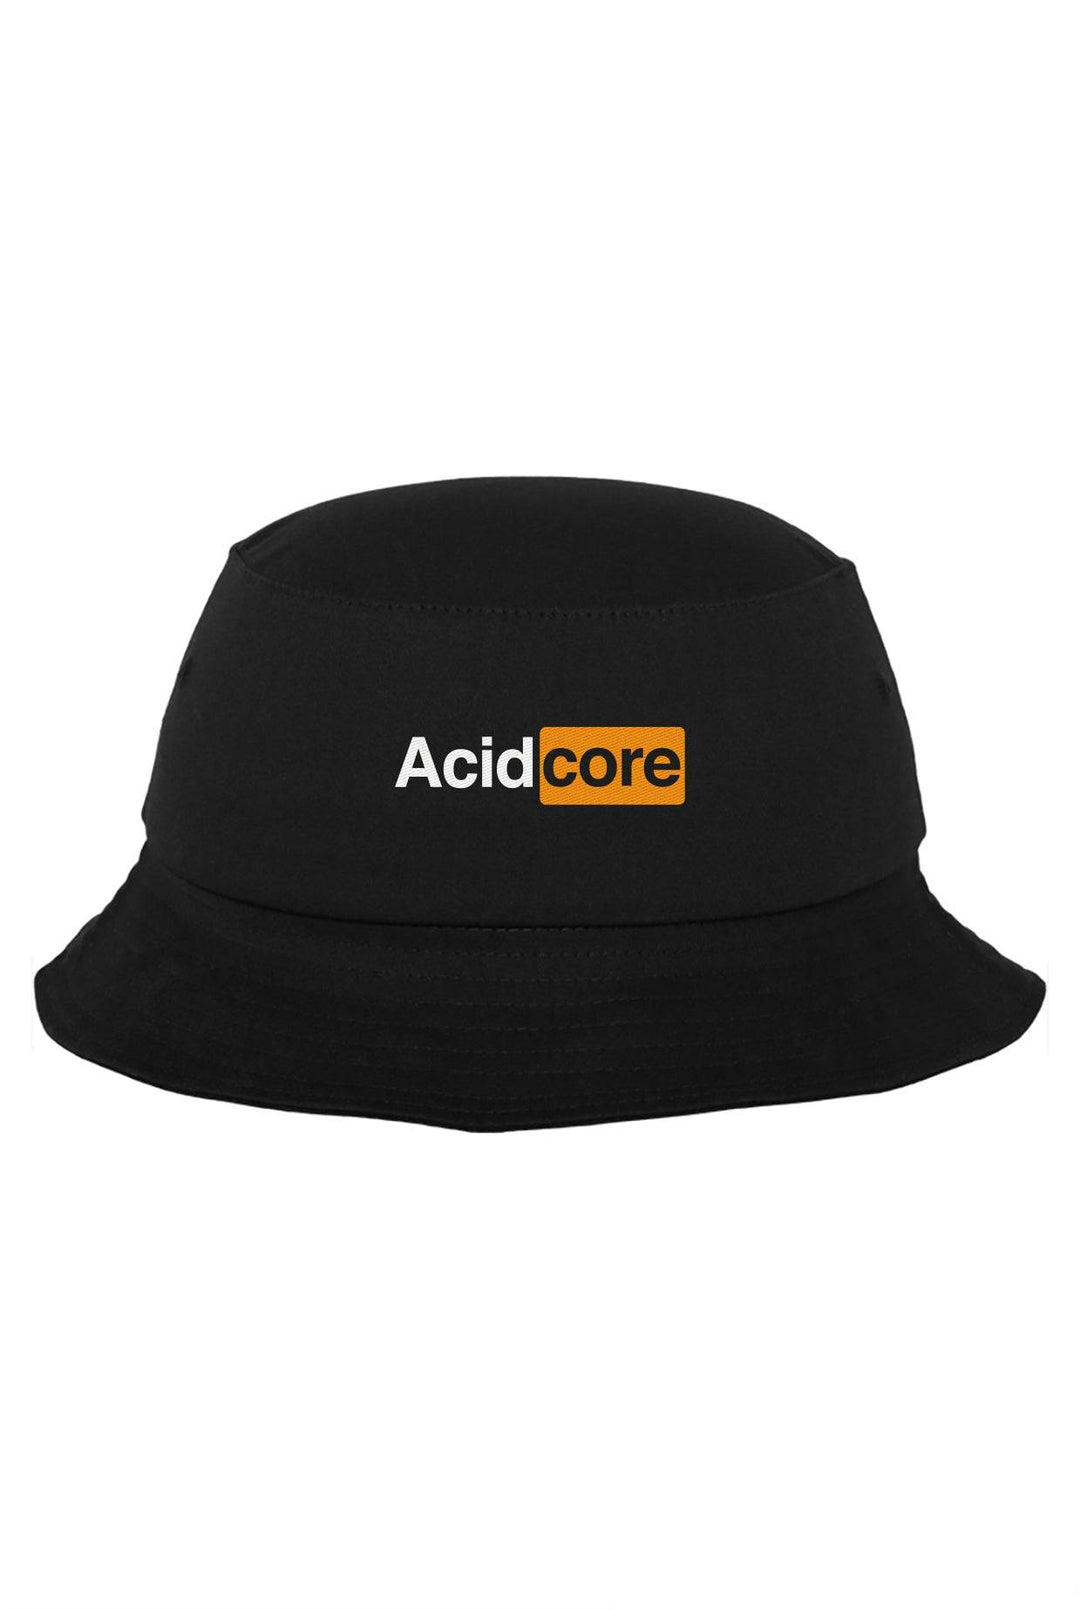 Acidcore - Bob - Etilik Wear 